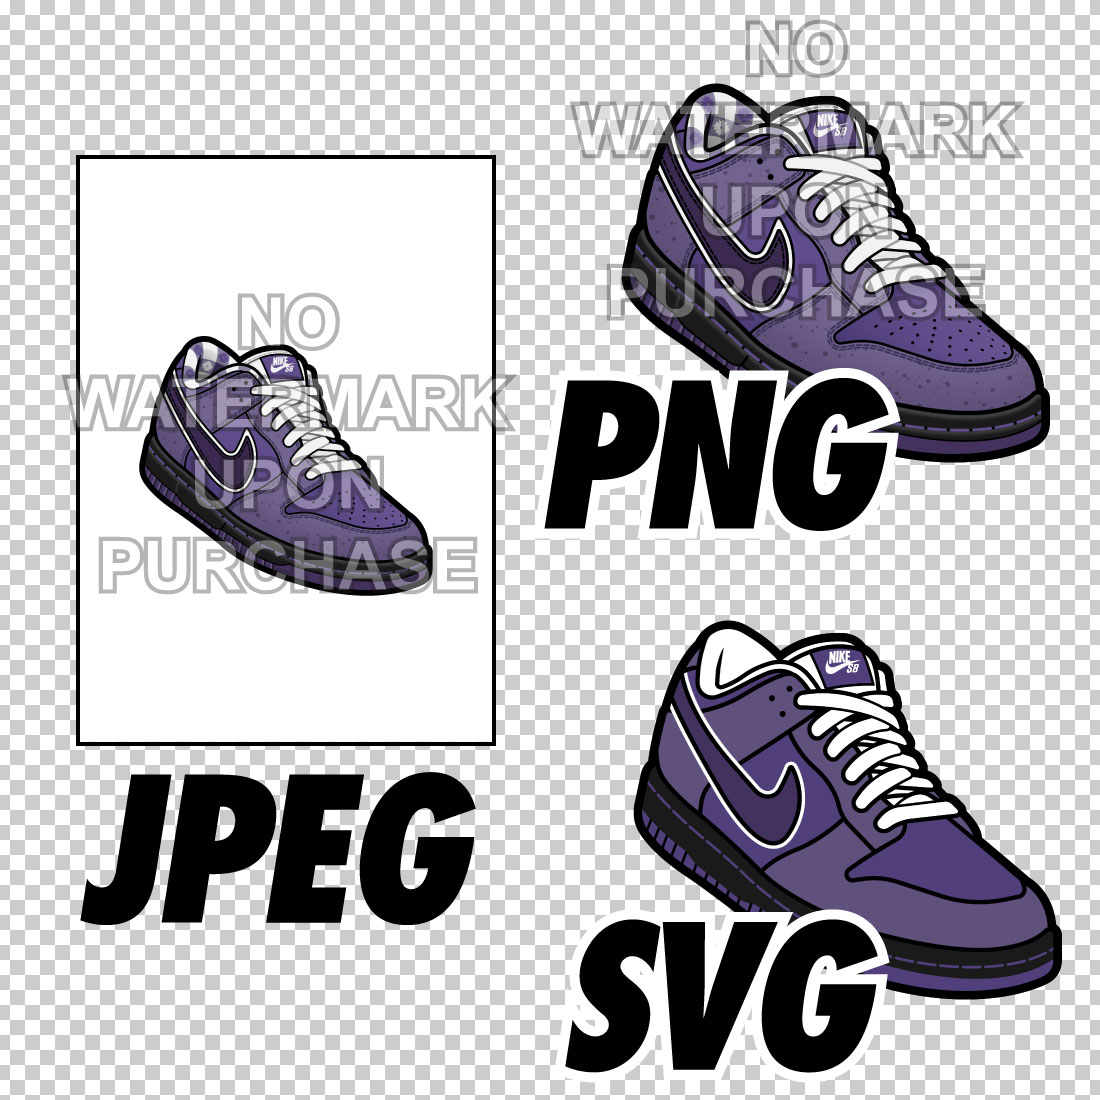 Dunk Low Purple Lobster JPEG PNG SVG Left & Right Shoe Bundle digital download preview image.